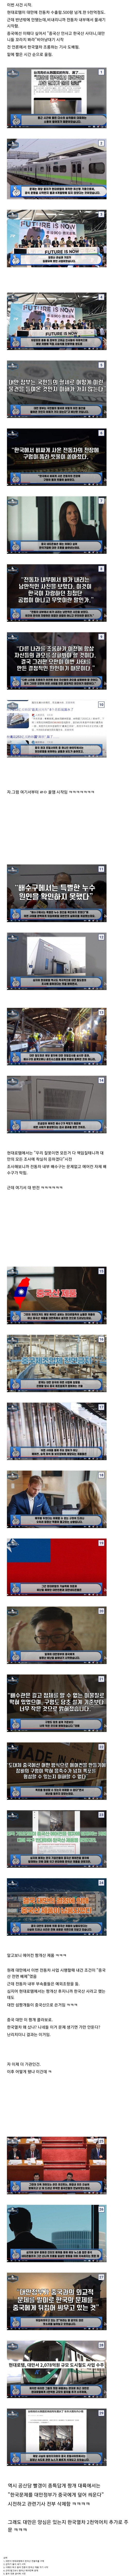 韓国製電車を嘲弄した中国メディア